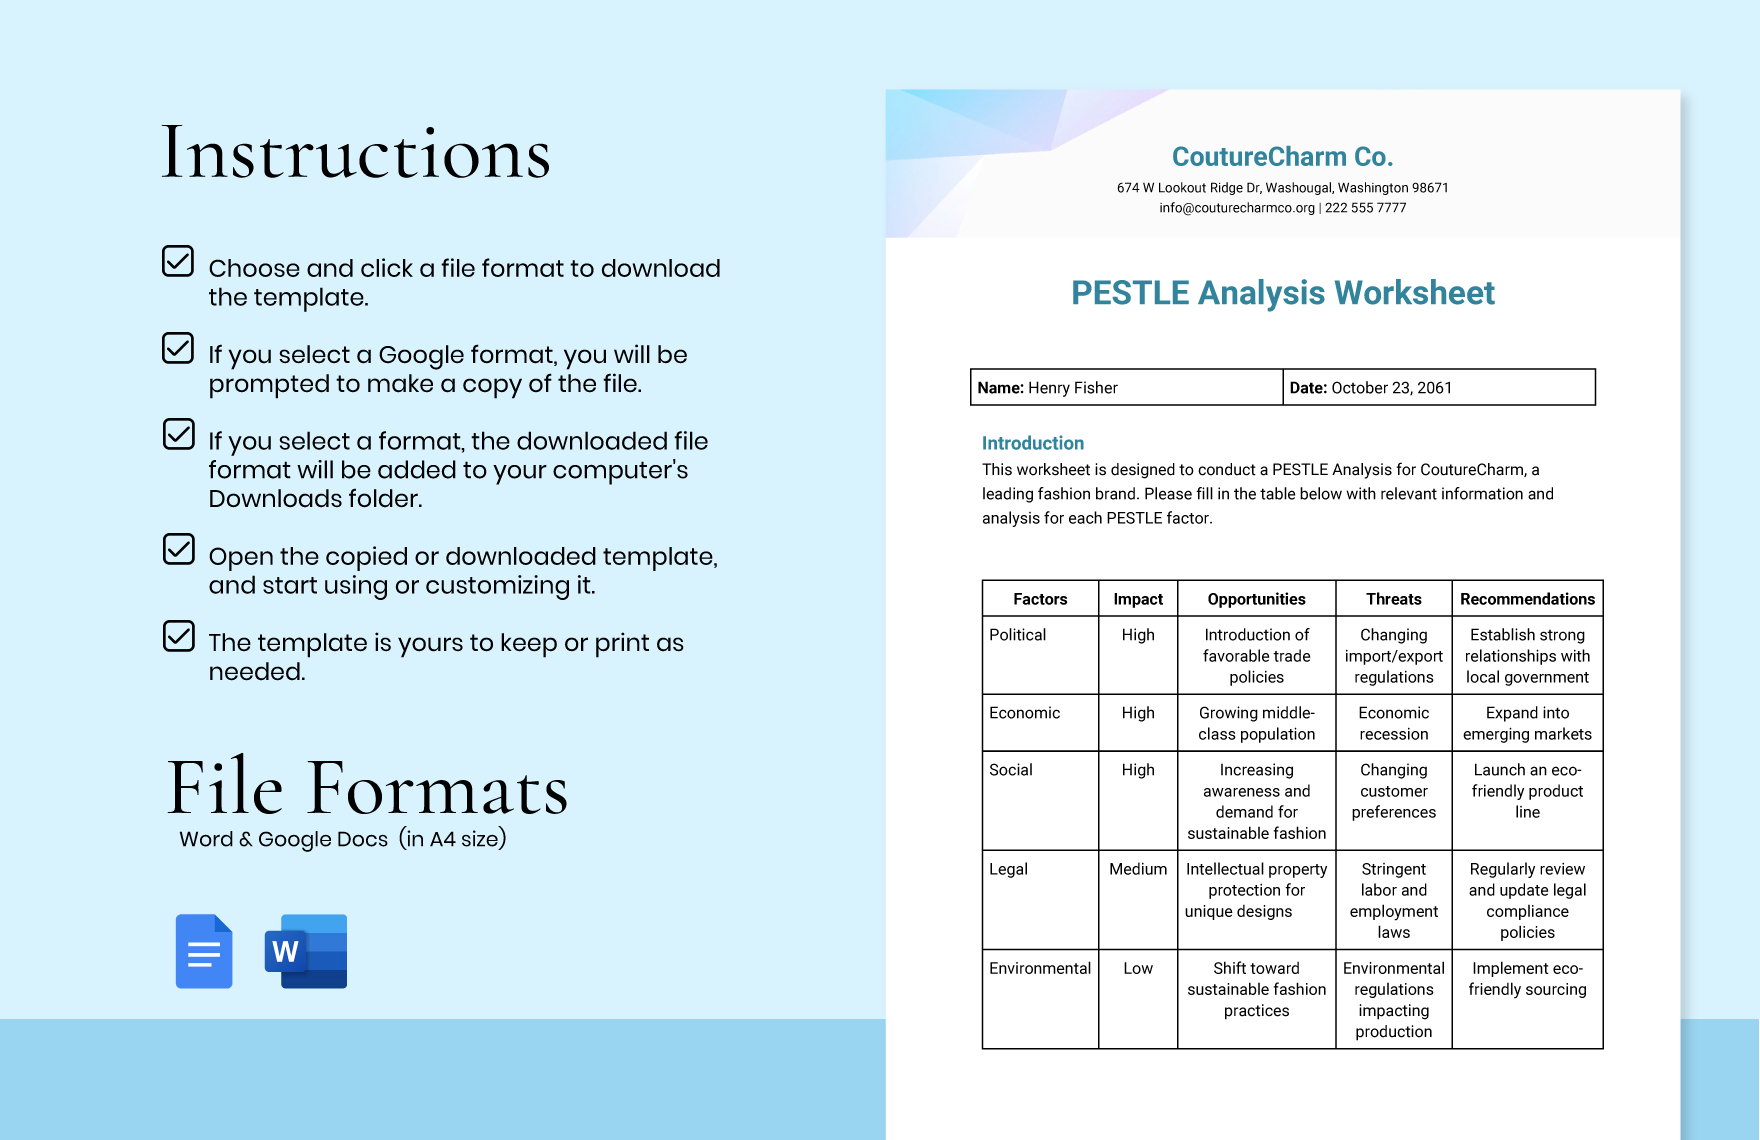 PESTLE Analysis Worksheet Template